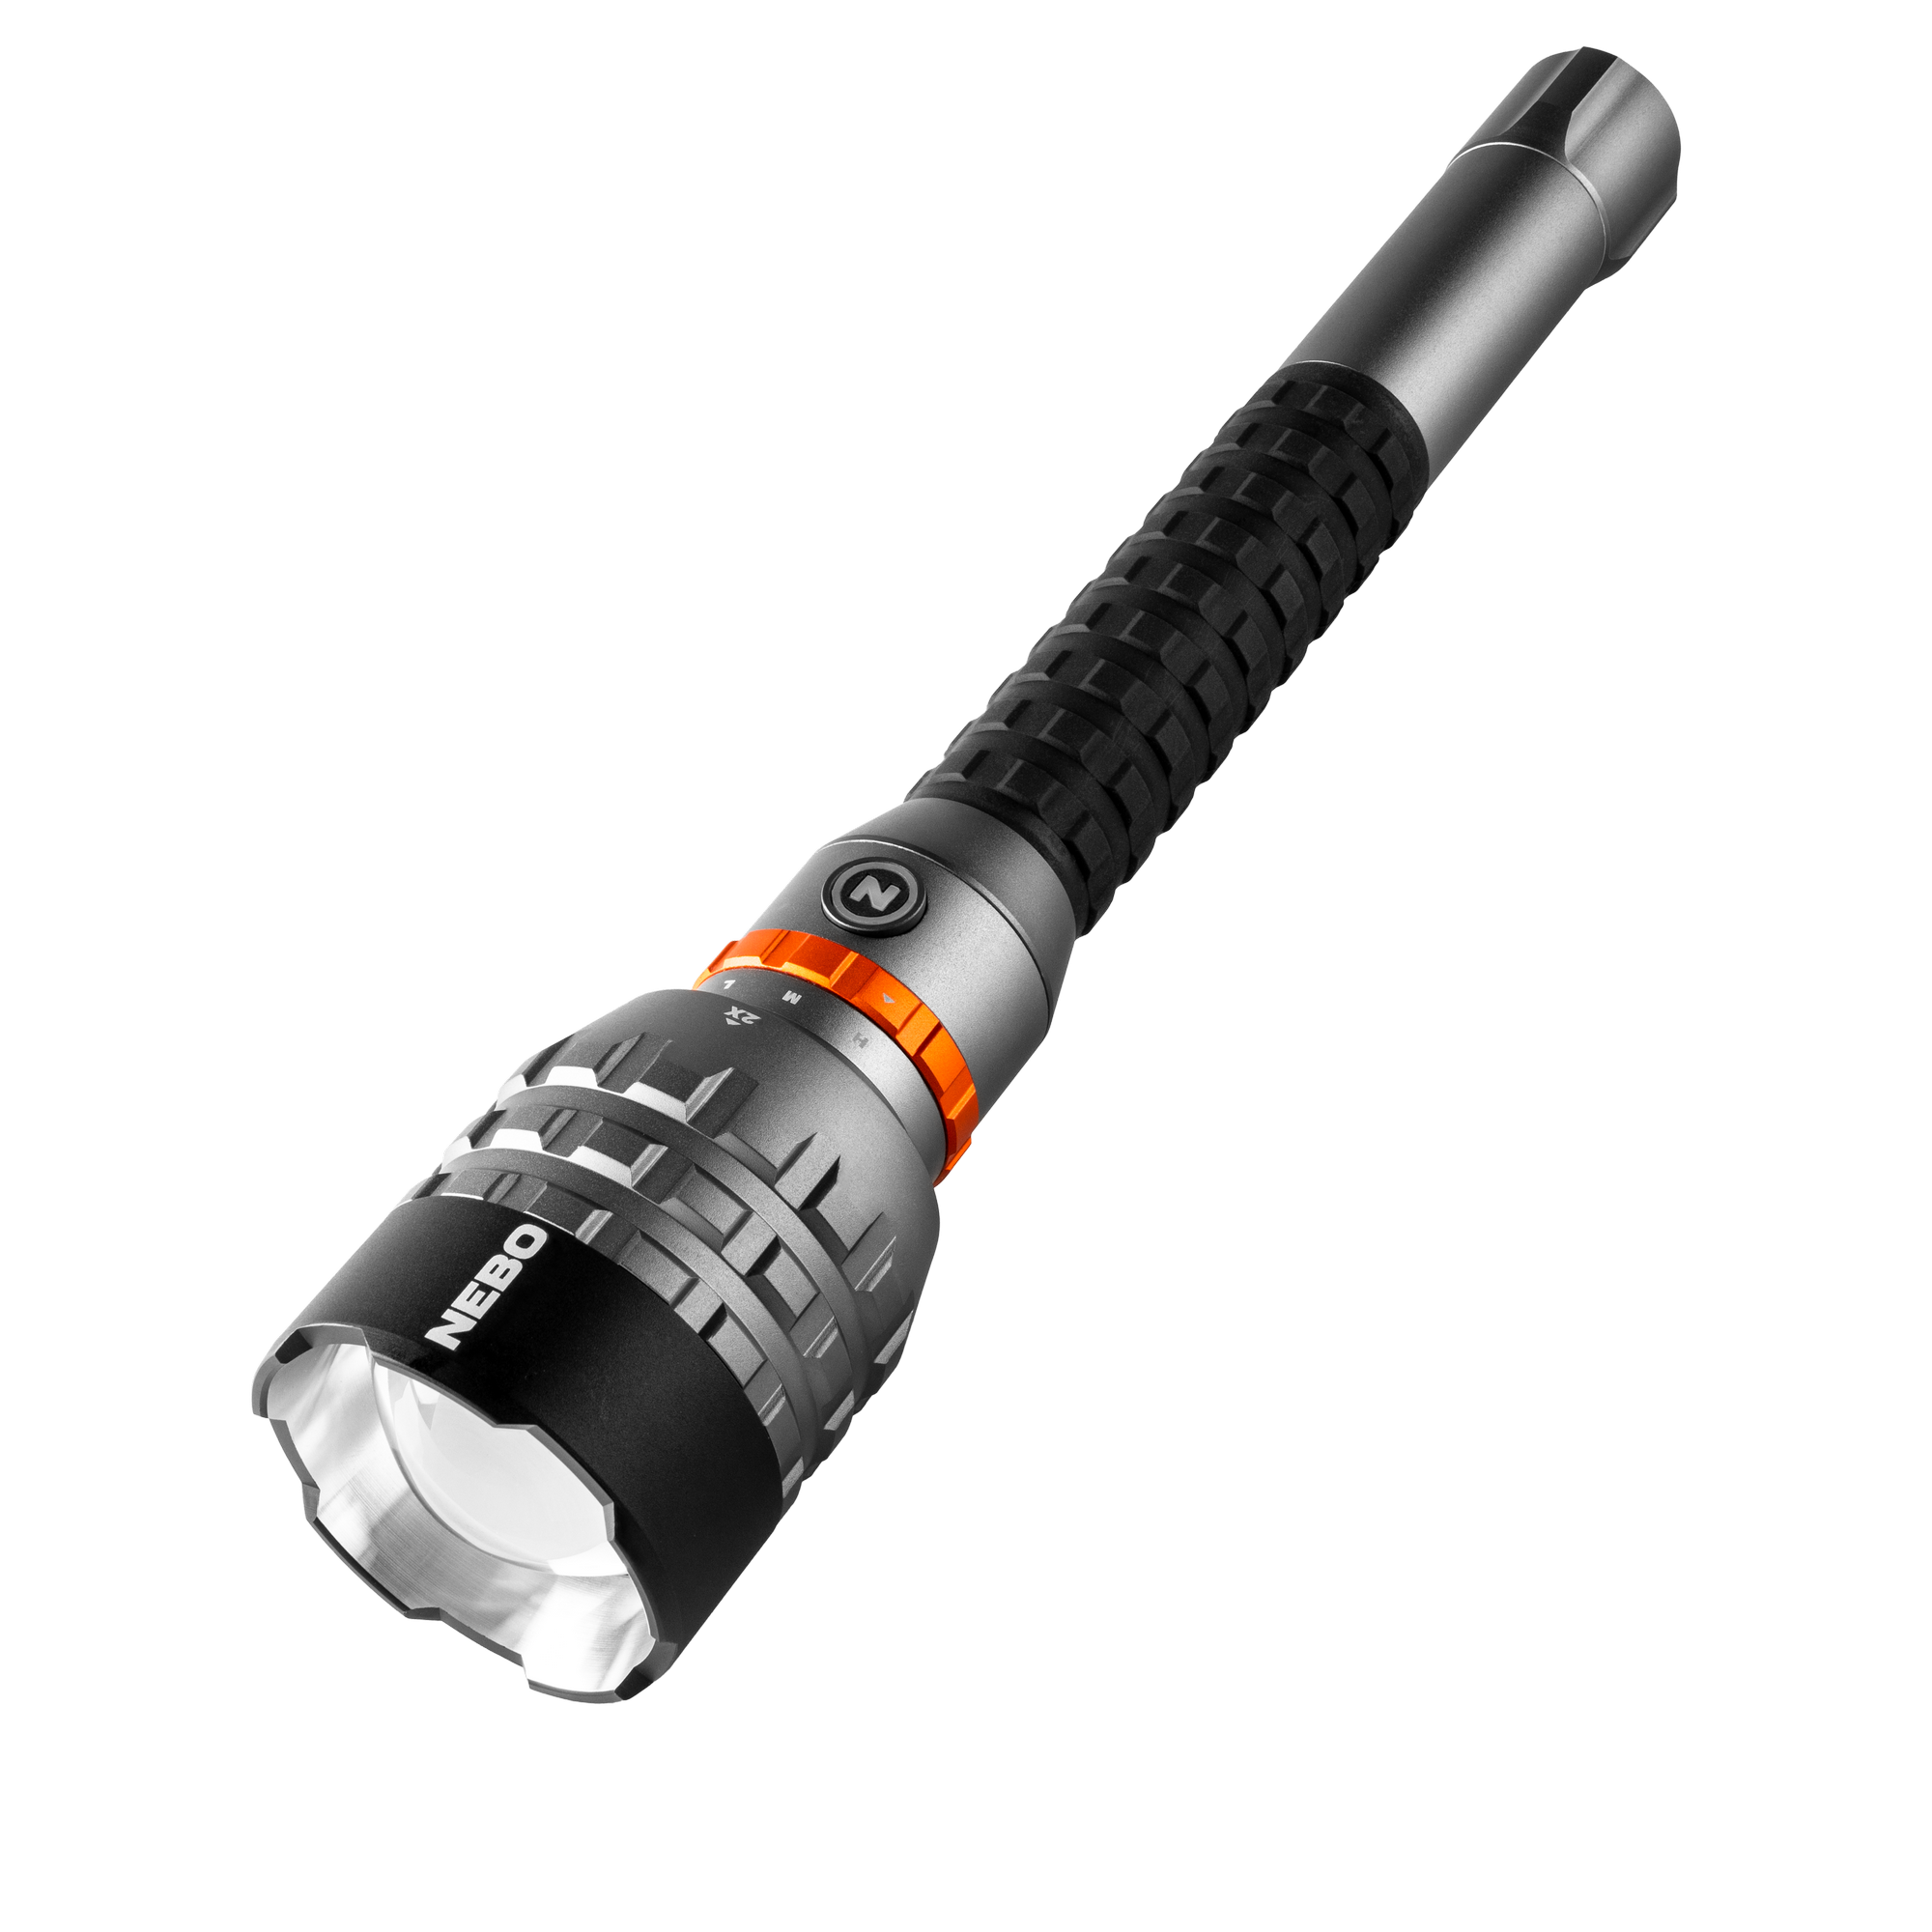 Akku-LED-Taschenlampe 'Davinci' silbergrau 18000 lm, 5 Lichtmodi + product picture